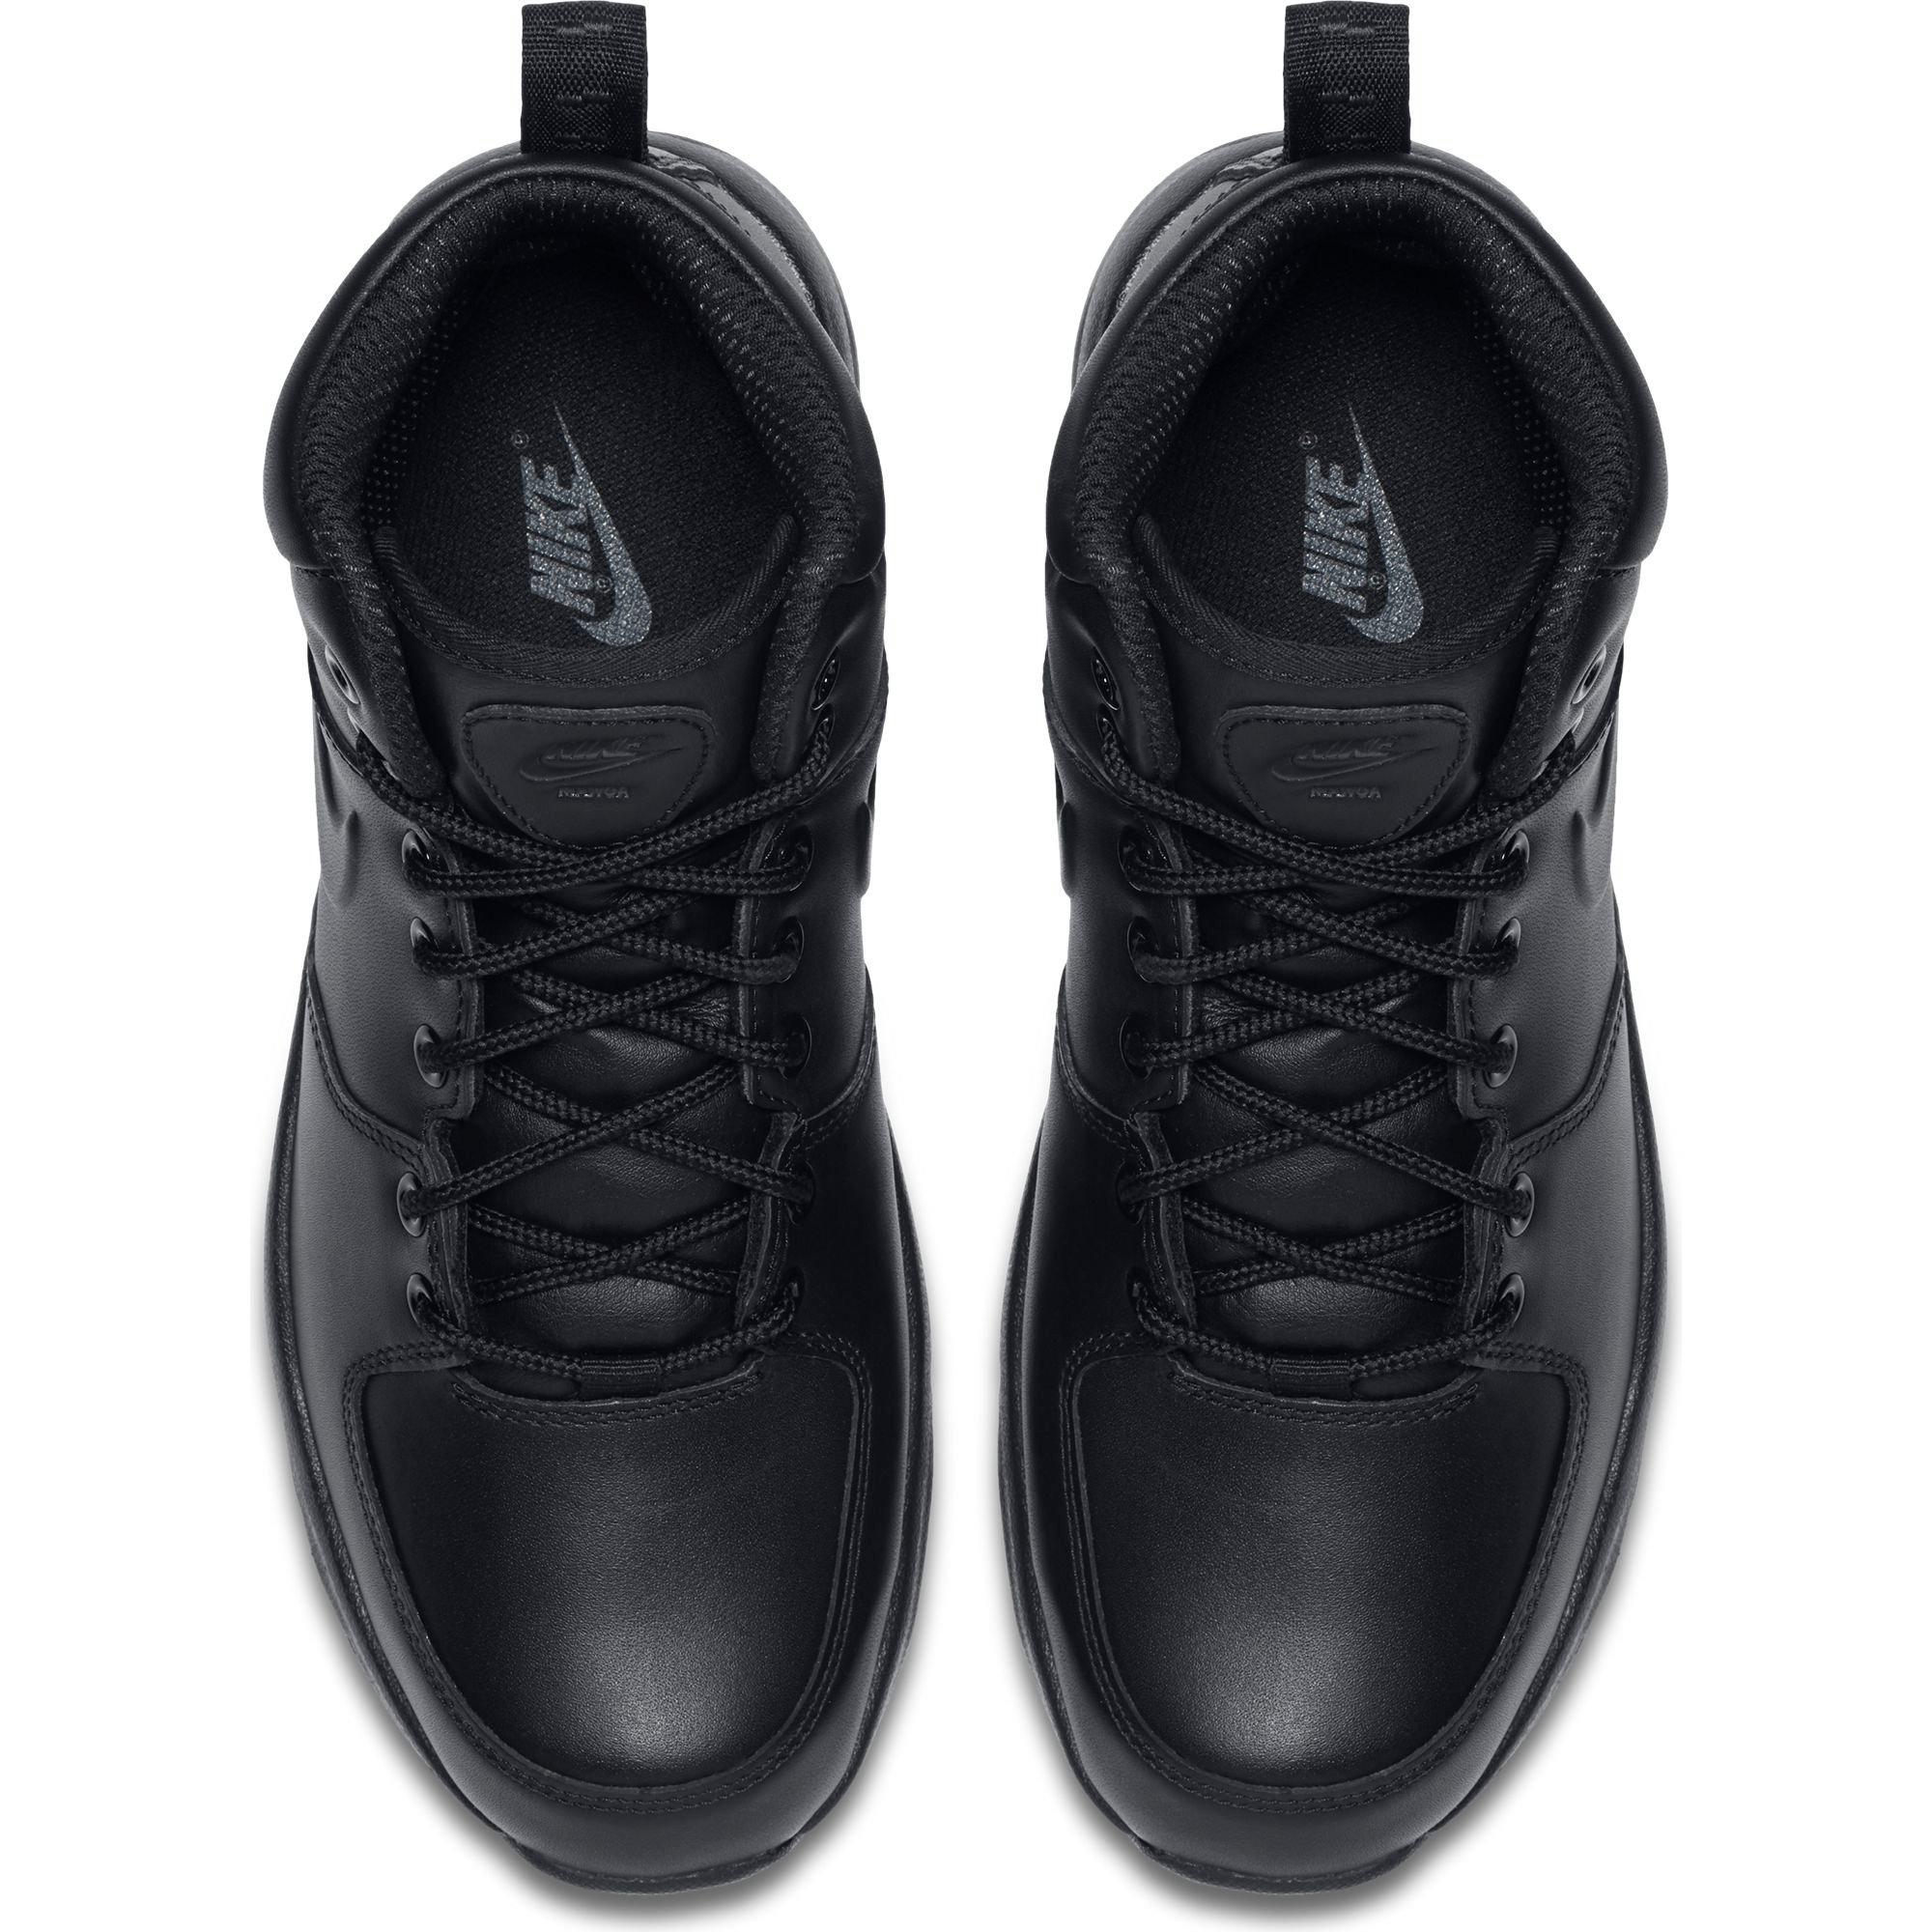 Мужская обувь кожаные кроссовки кожаные мужские. Ботинки Nike Manoa Leather 454350-003. Nike Manoa черные. Nike Manoa Leather Black. Ботинки men's Manoa.